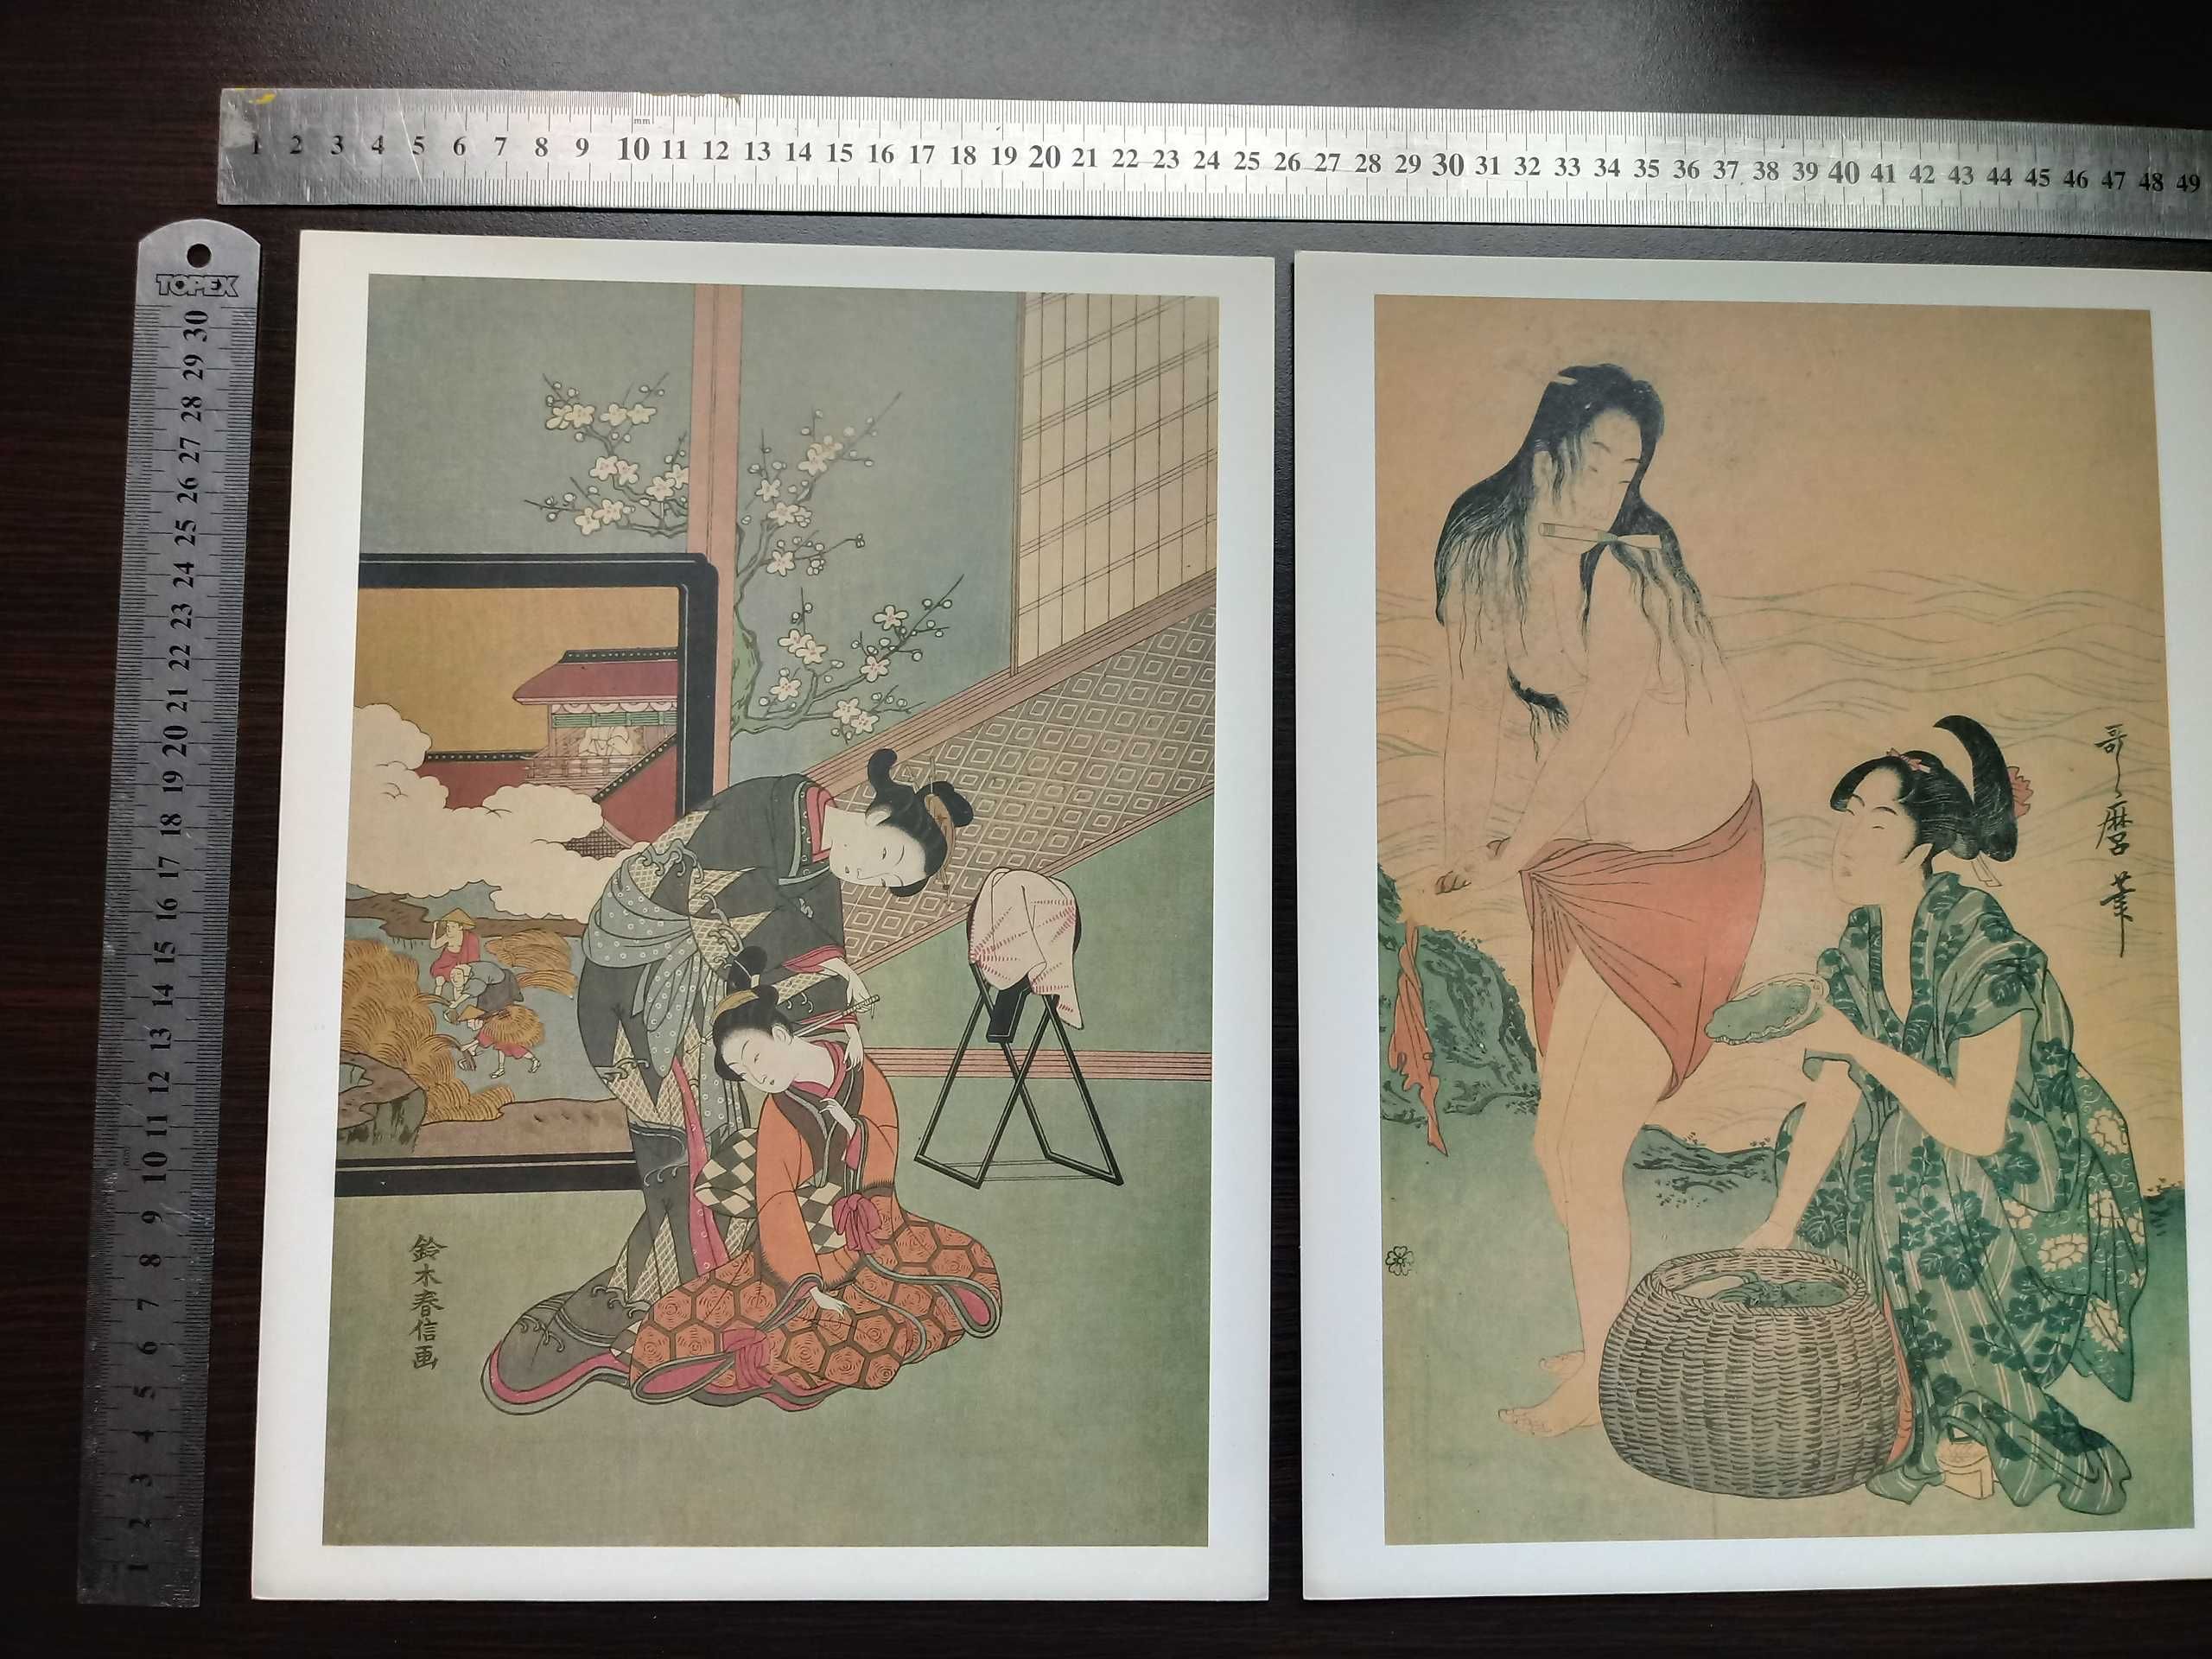 Drzeworyty japońskie /Japanische Farbholzschnitte/ Yang Enlin